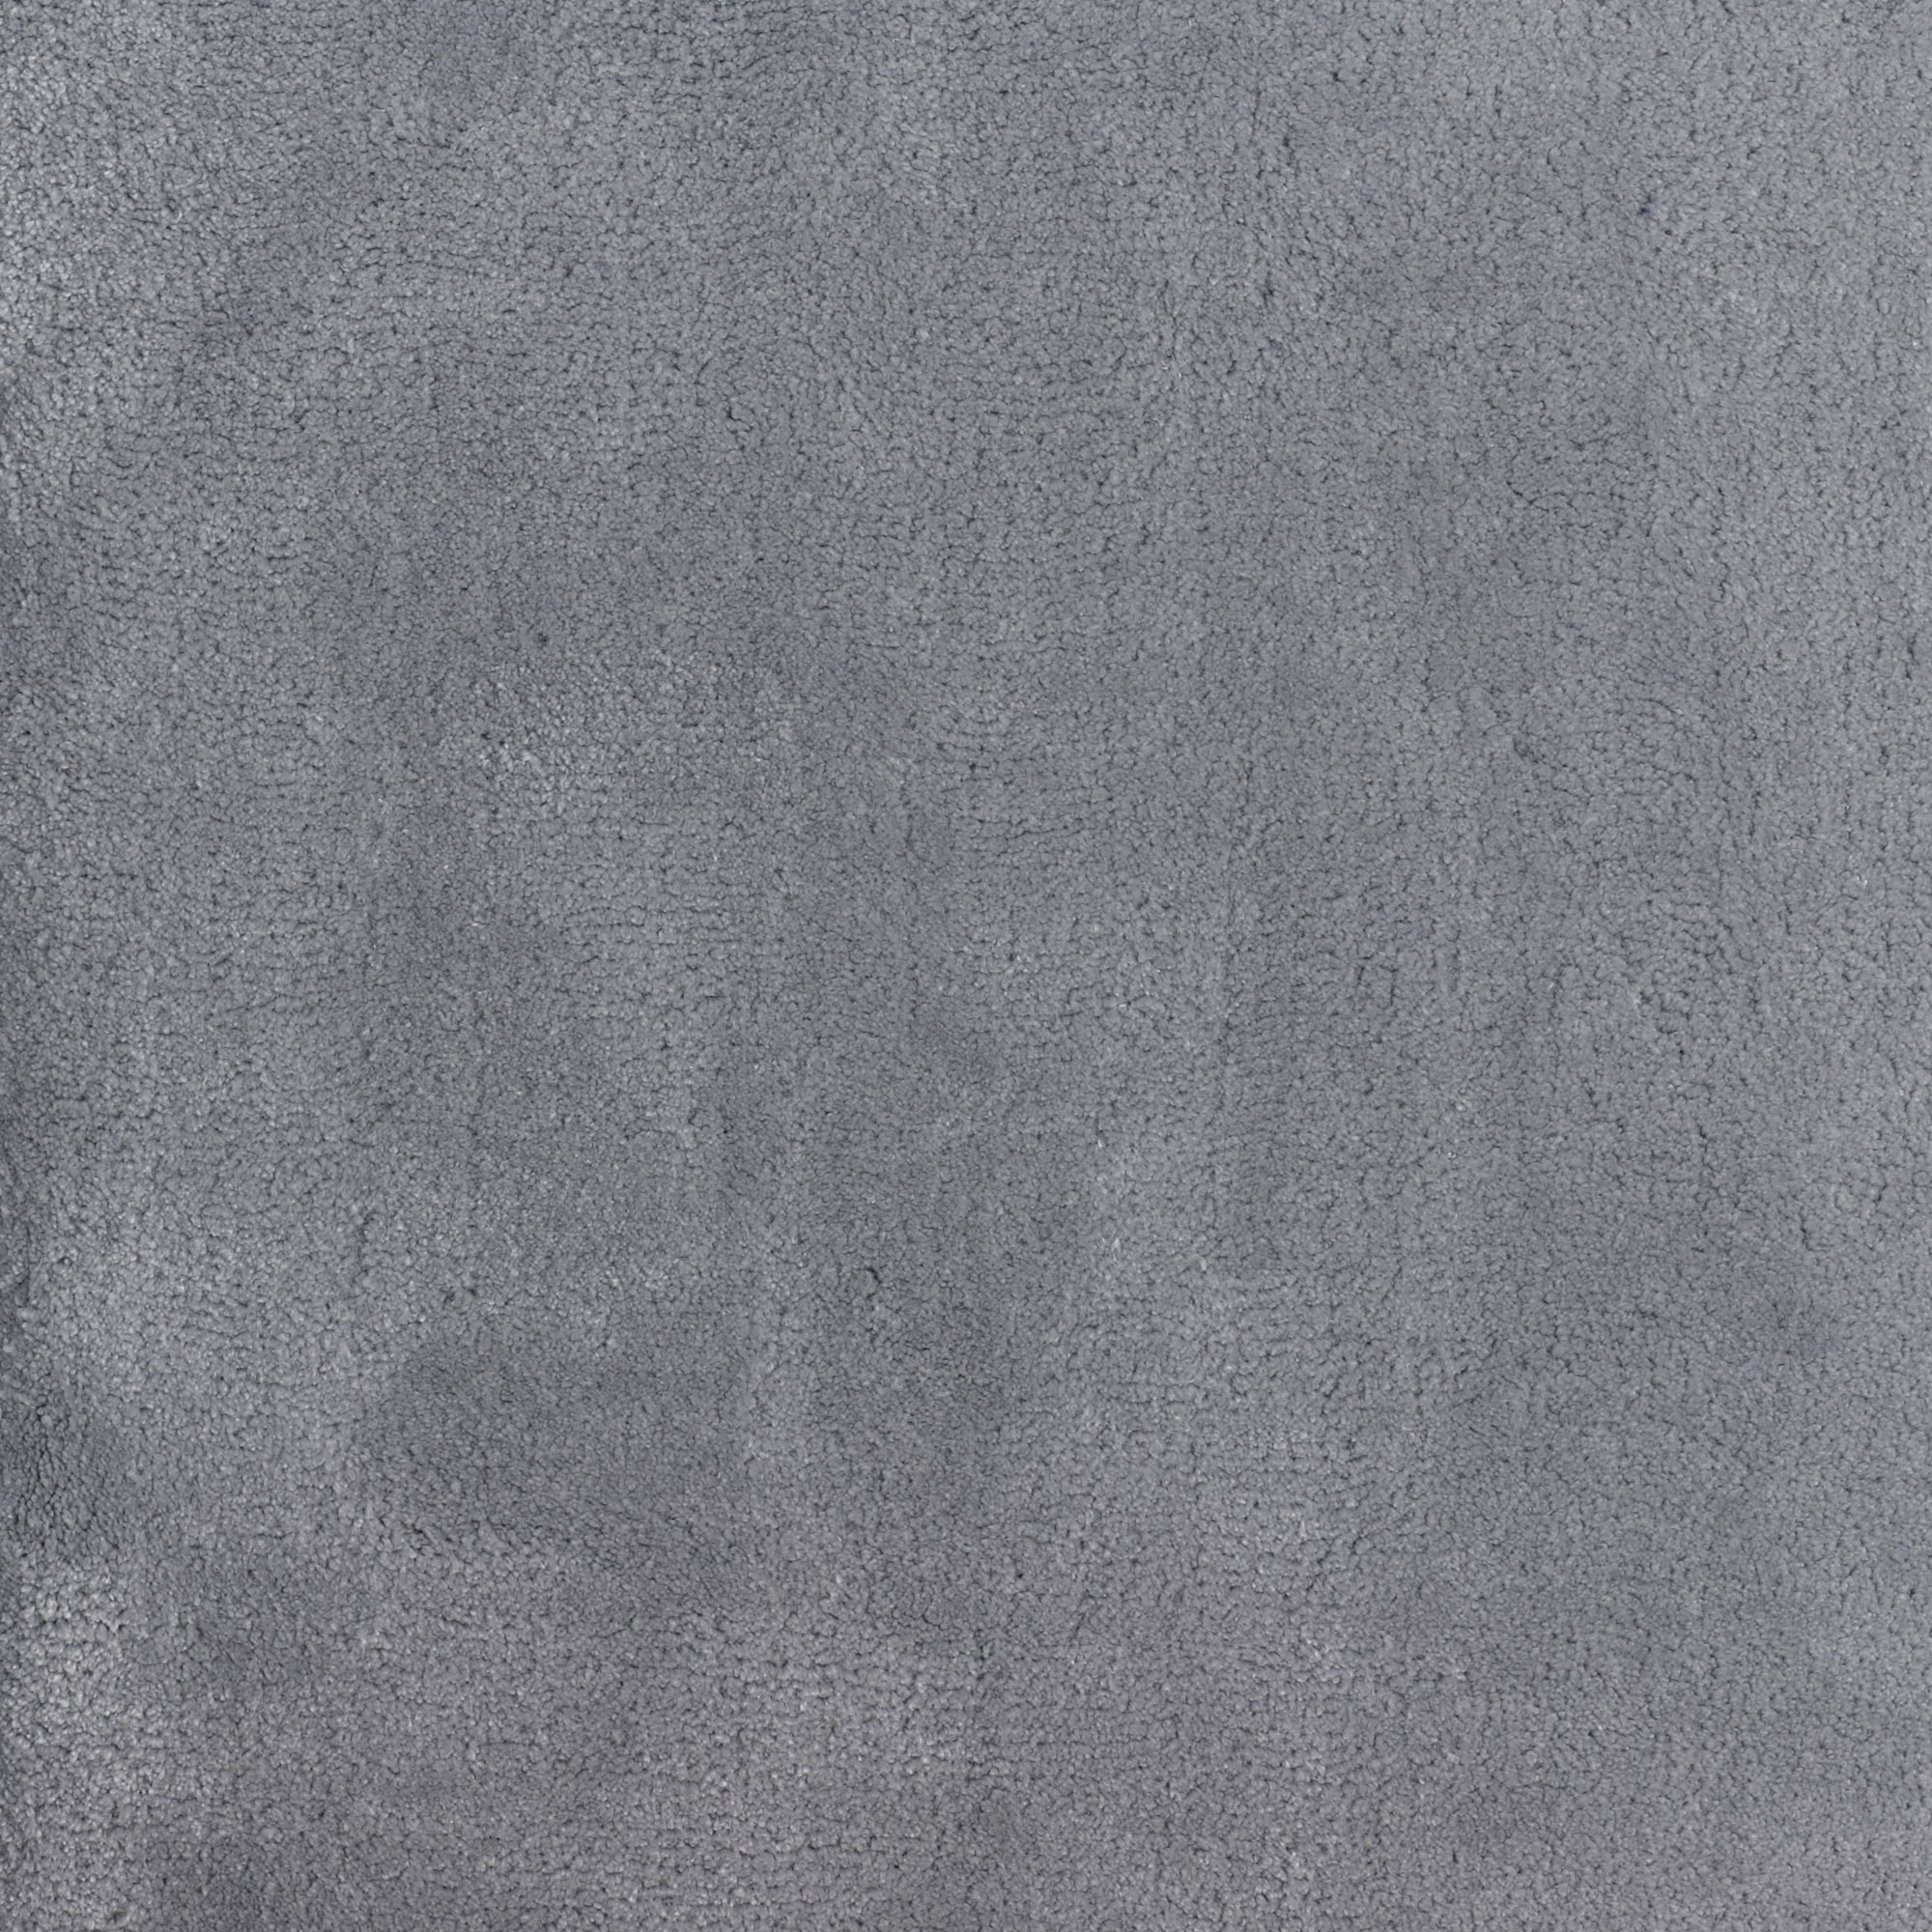 Allure: Veiled Smoke - 100% Soft Strand Carpet